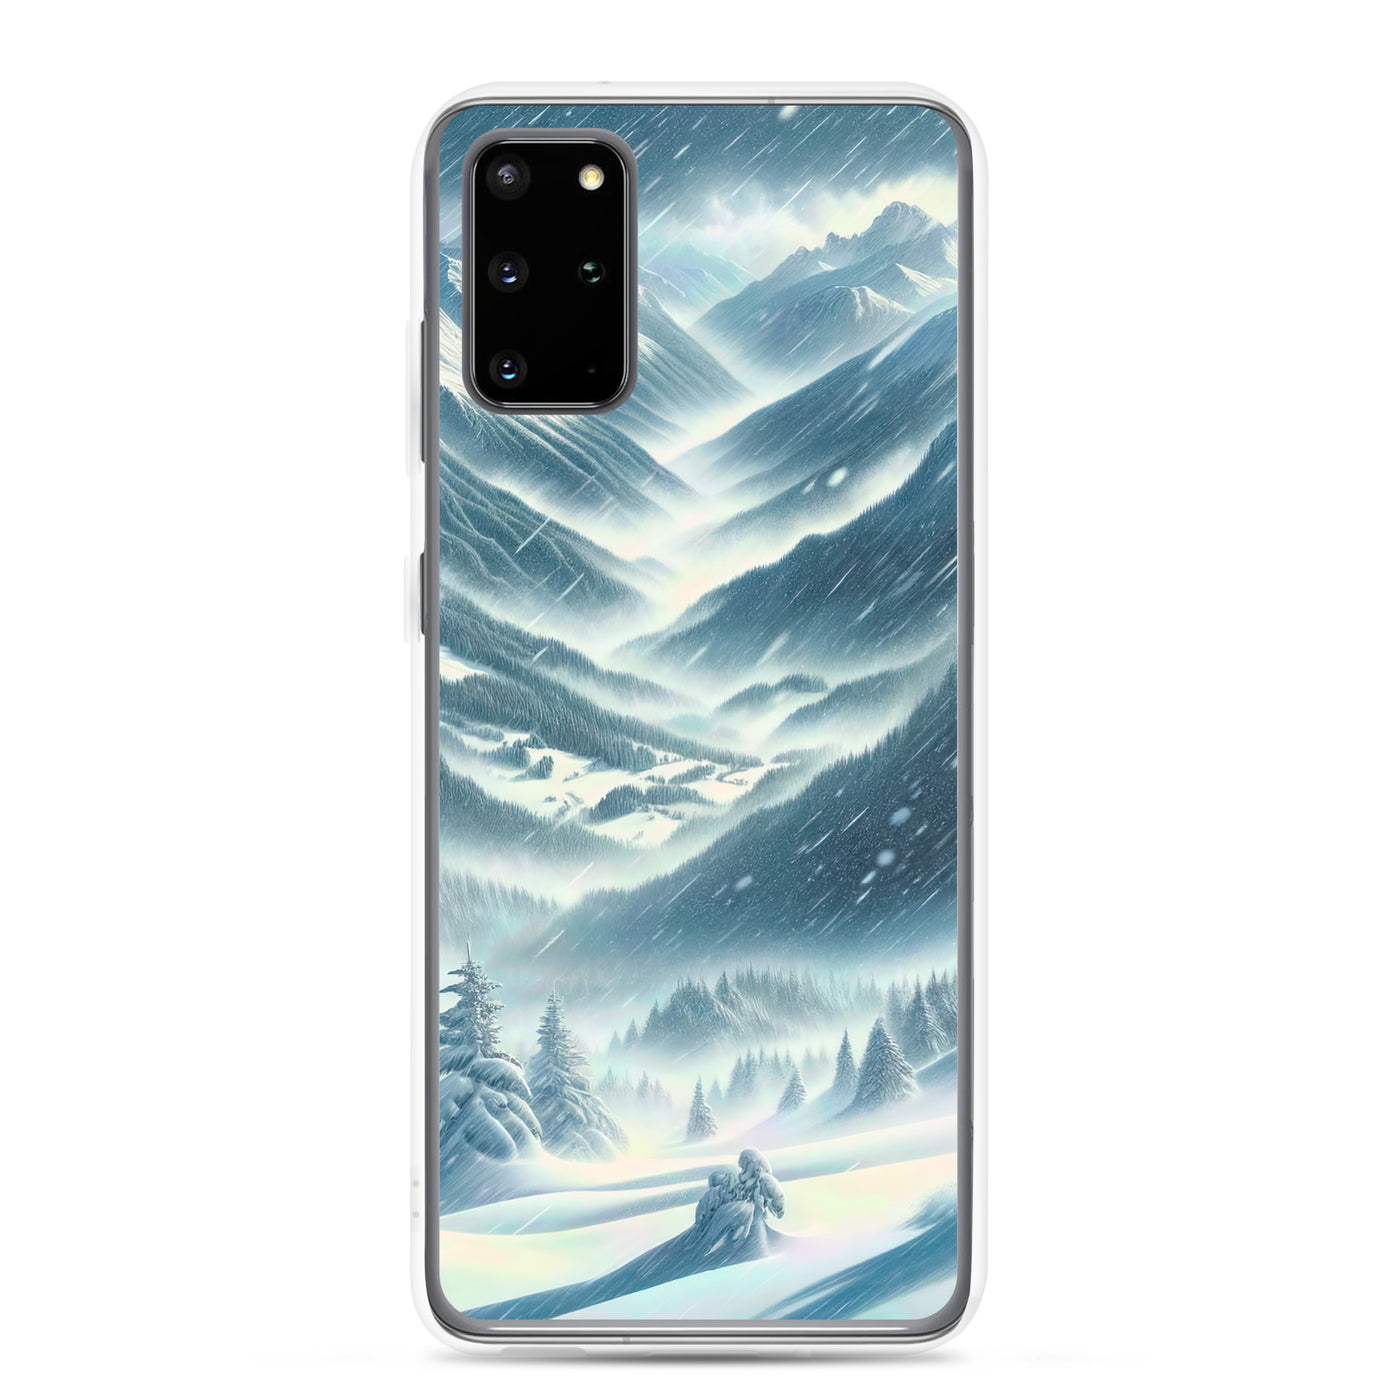 Alpine Wildnis im Wintersturm mit Skifahrer, verschneite Landschaft - Samsung Schutzhülle (durchsichtig) klettern ski xxx yyy zzz Samsung Galaxy S20 Plus